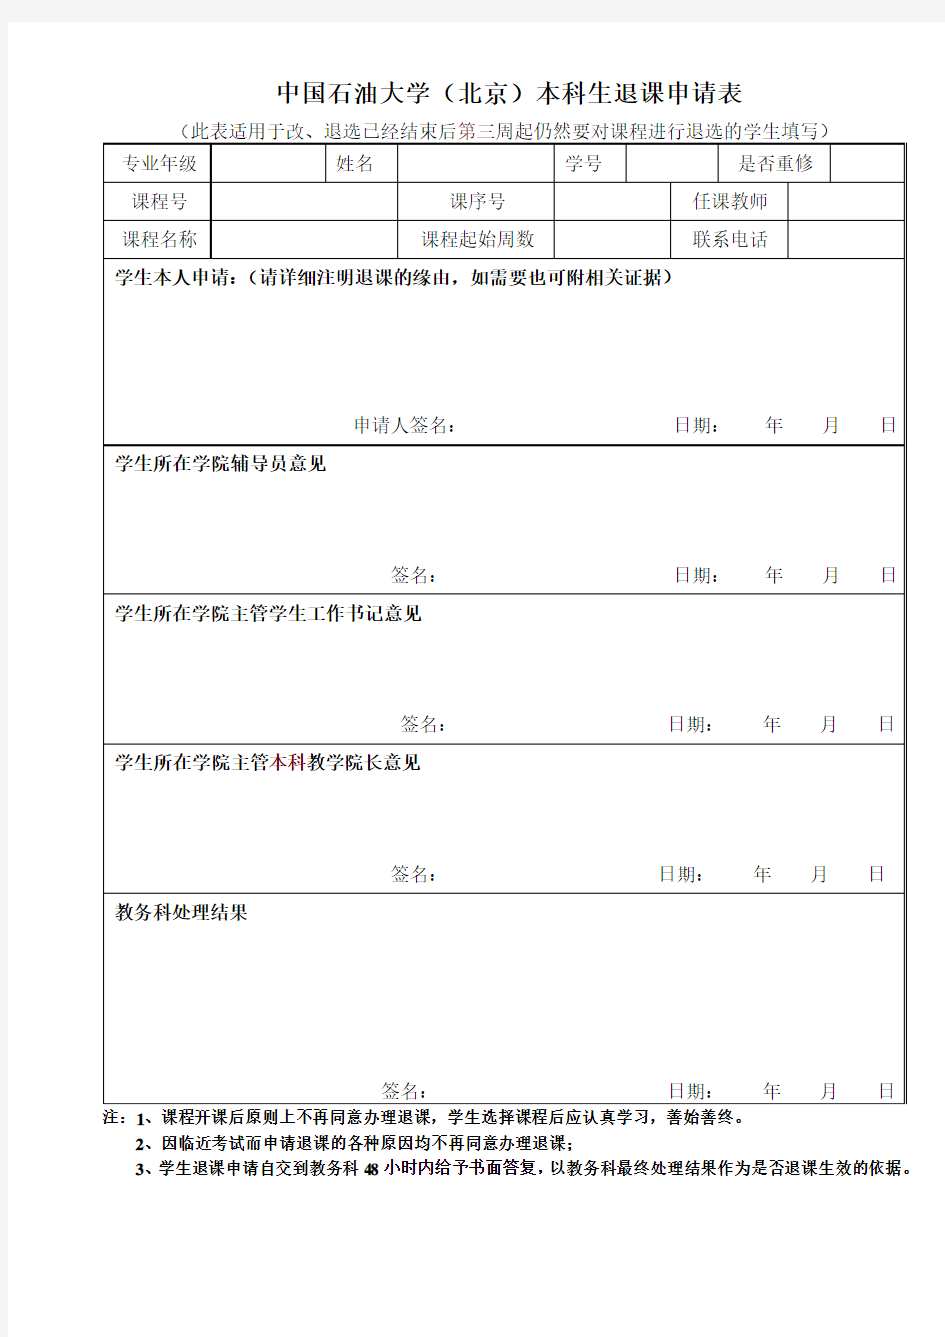 中国石油大学(北京)退课申请表(正式)